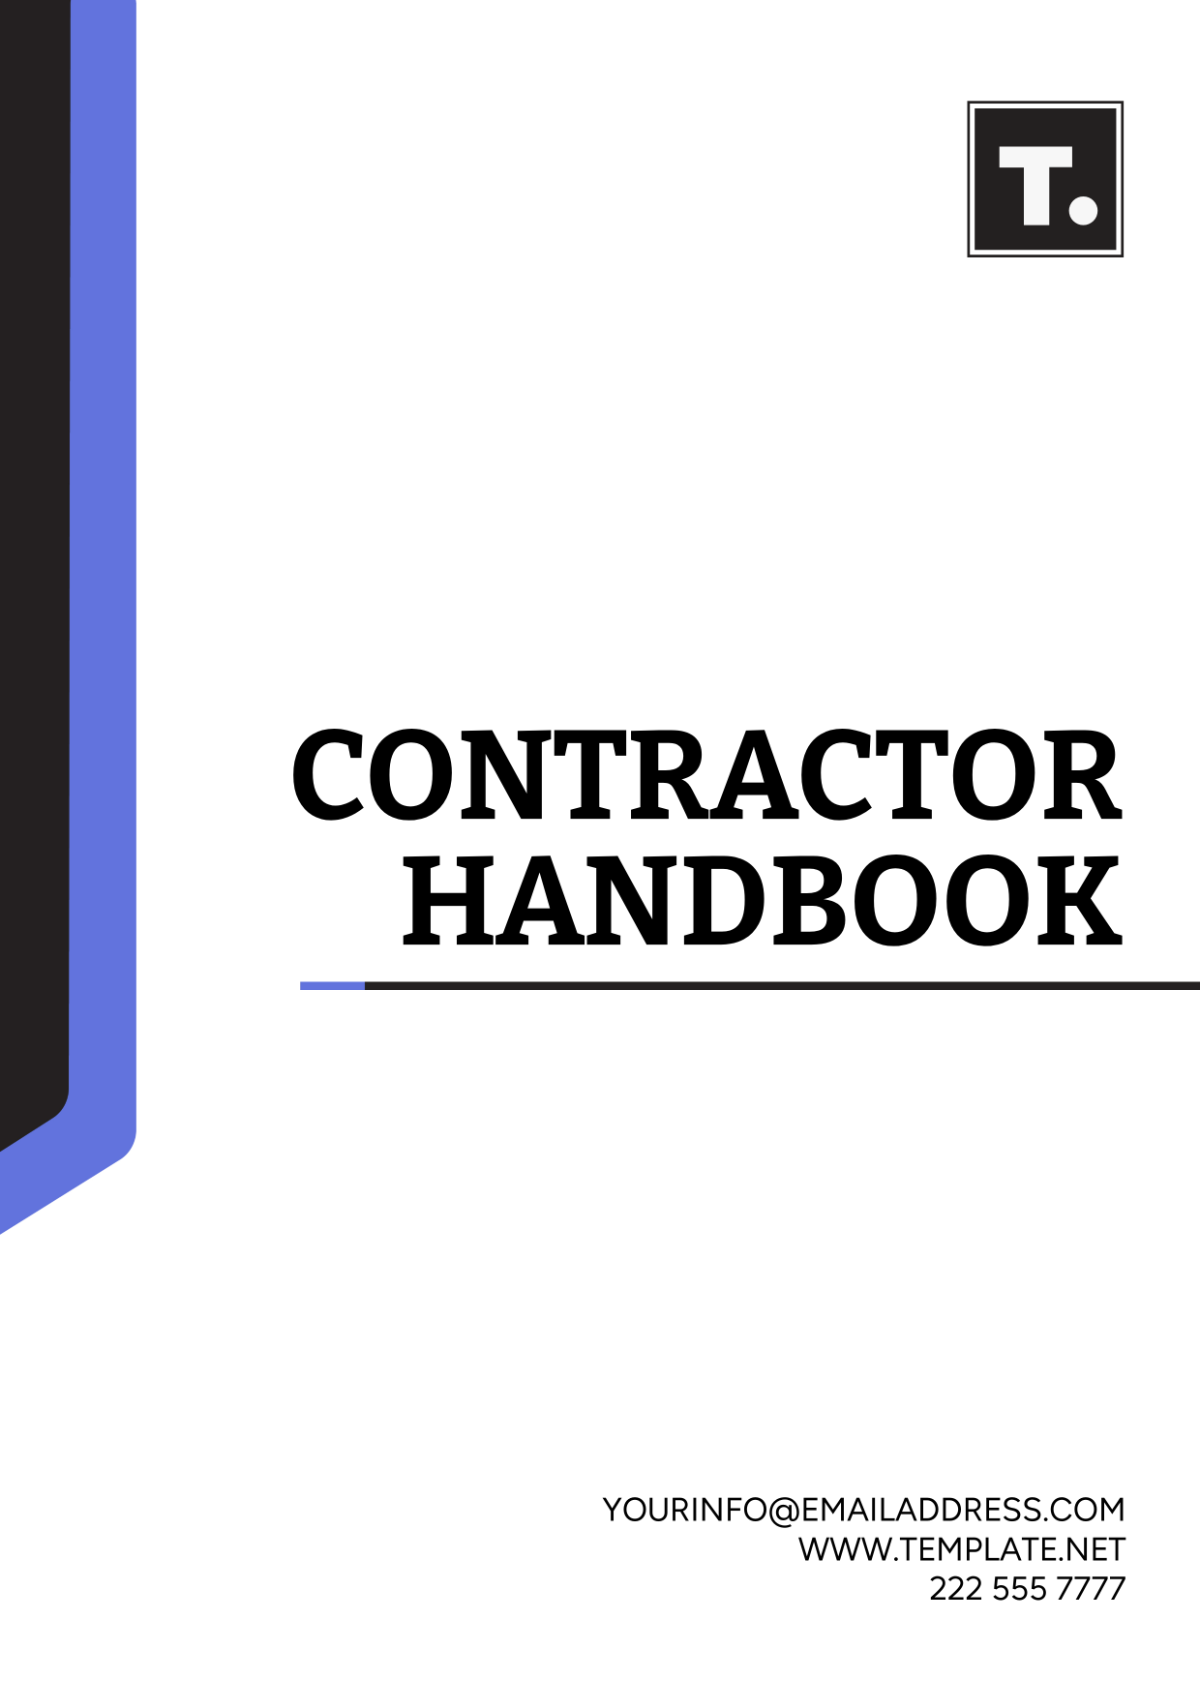 Free Contractor Handbook Template